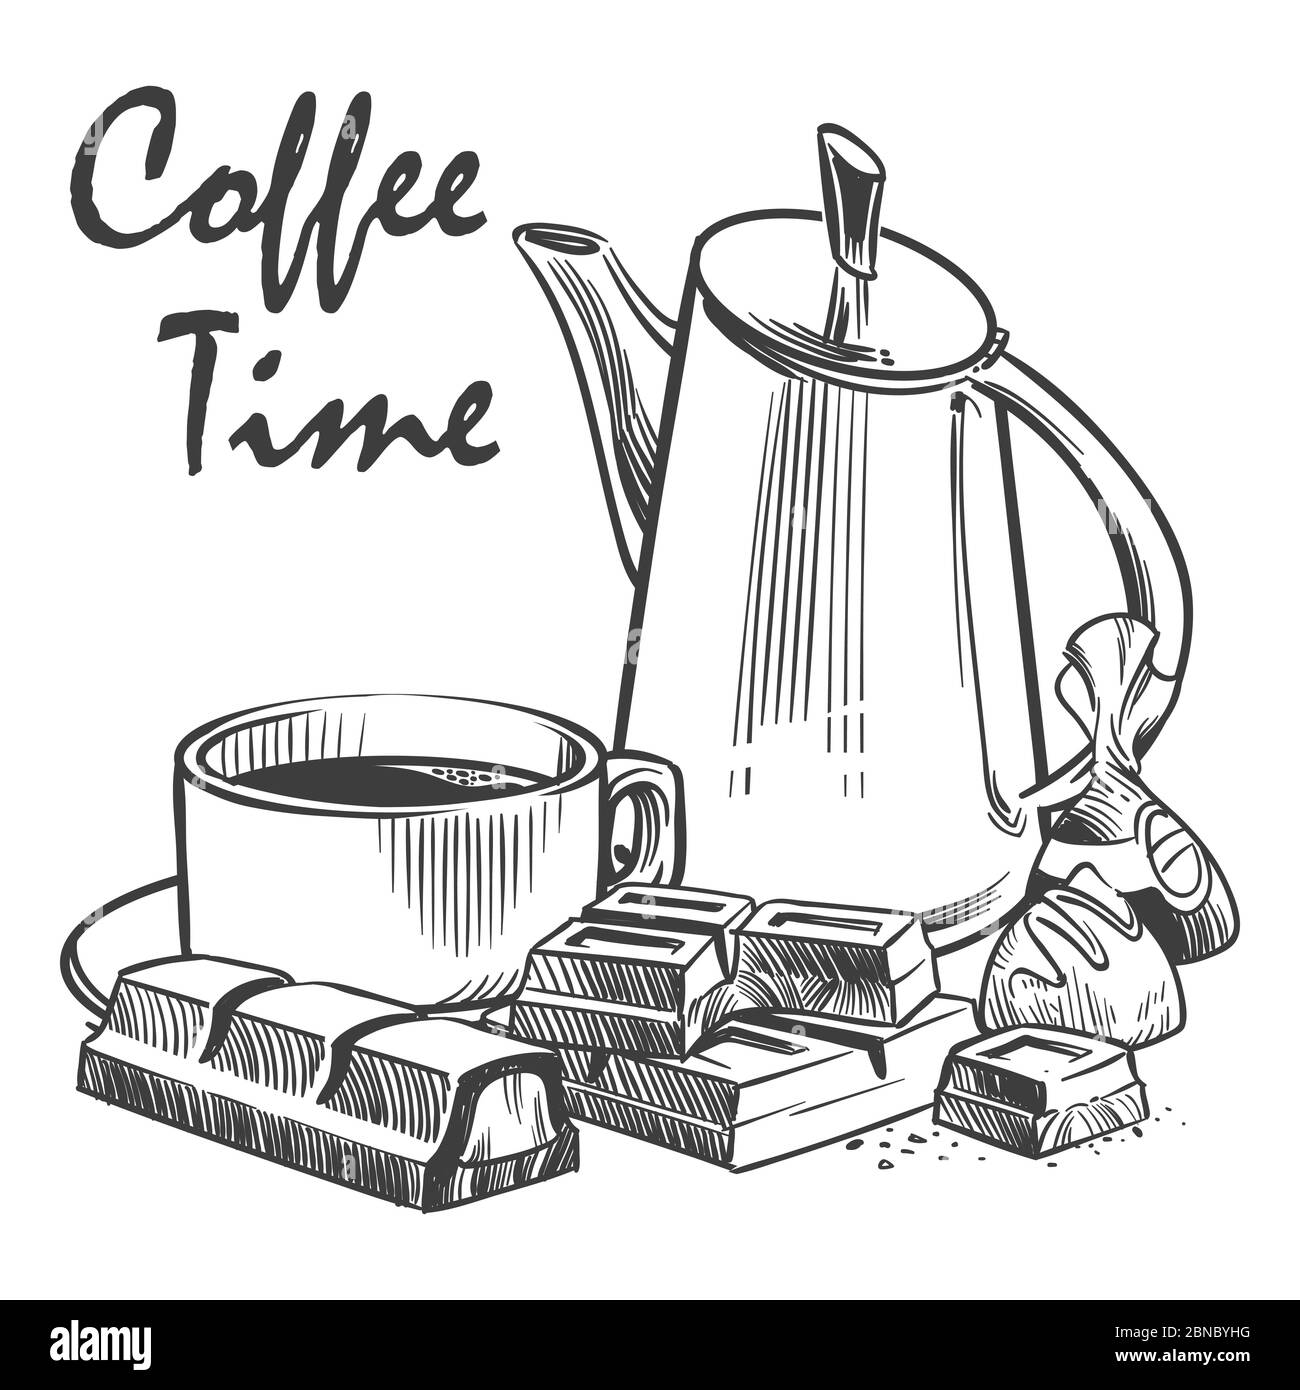 Handgezeichnete Vektorgrafik für Kaffezeit. Tasse Kaffee, Schokolade, Praline und Topf auf weißem Hintergrund isoliert Stock Vektor